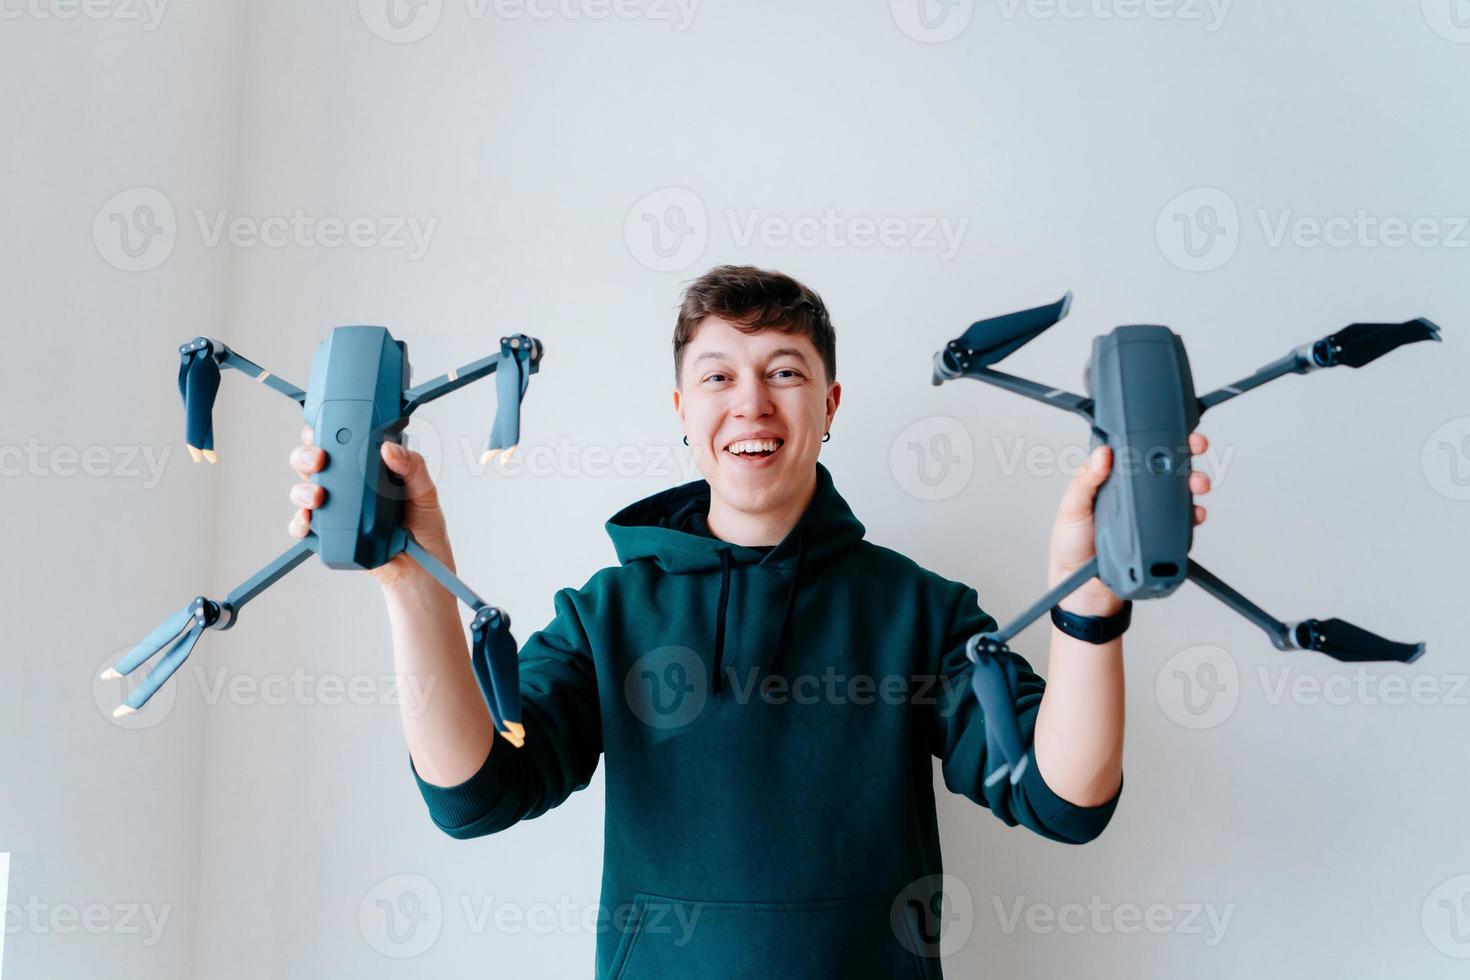 cara segura dois quadrocopters contra uma parede foto